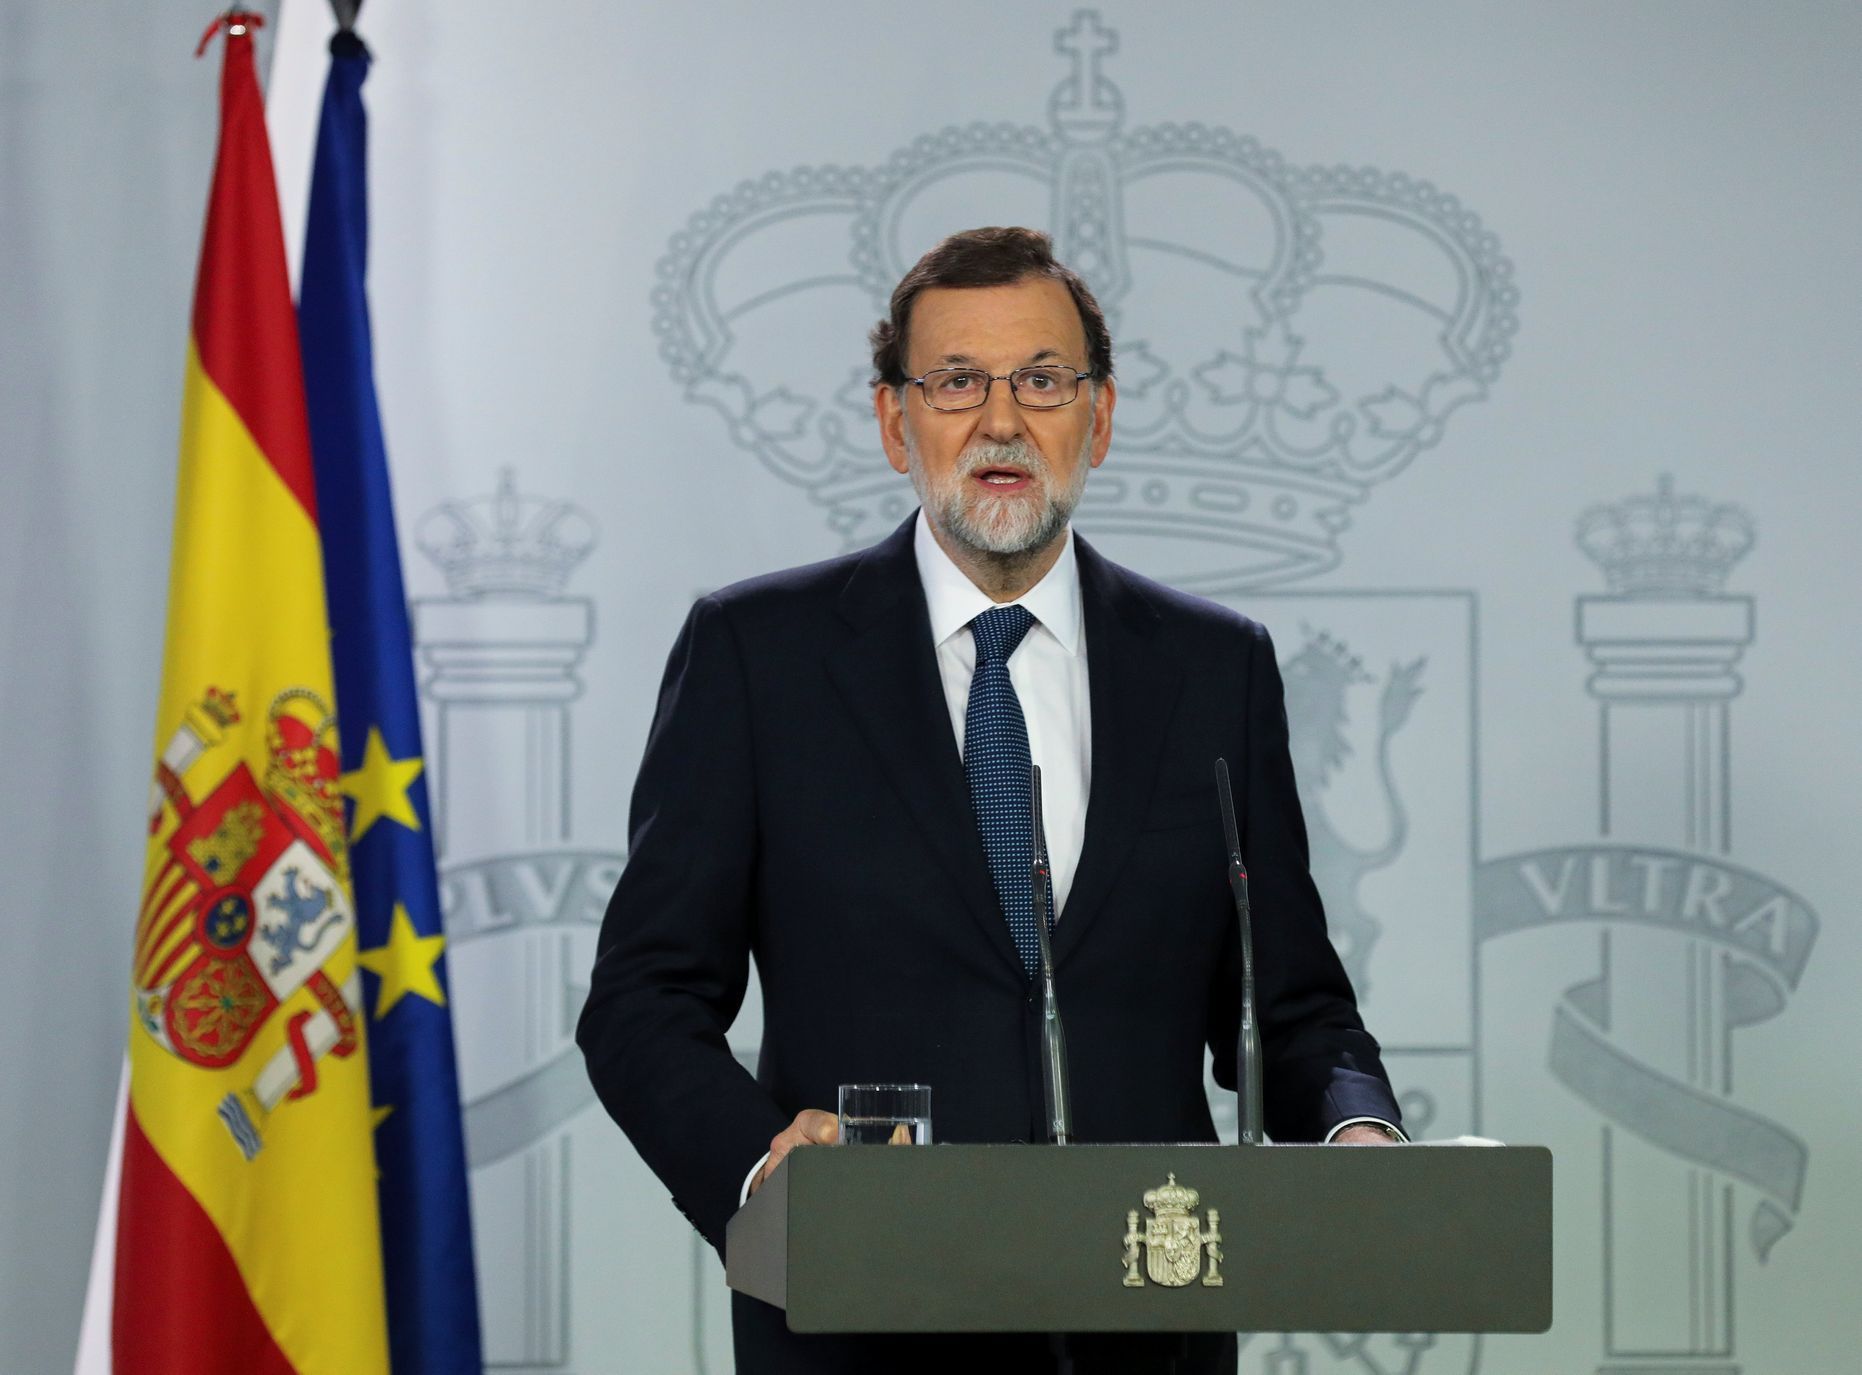 Mariano Rajoy, španělský premiér